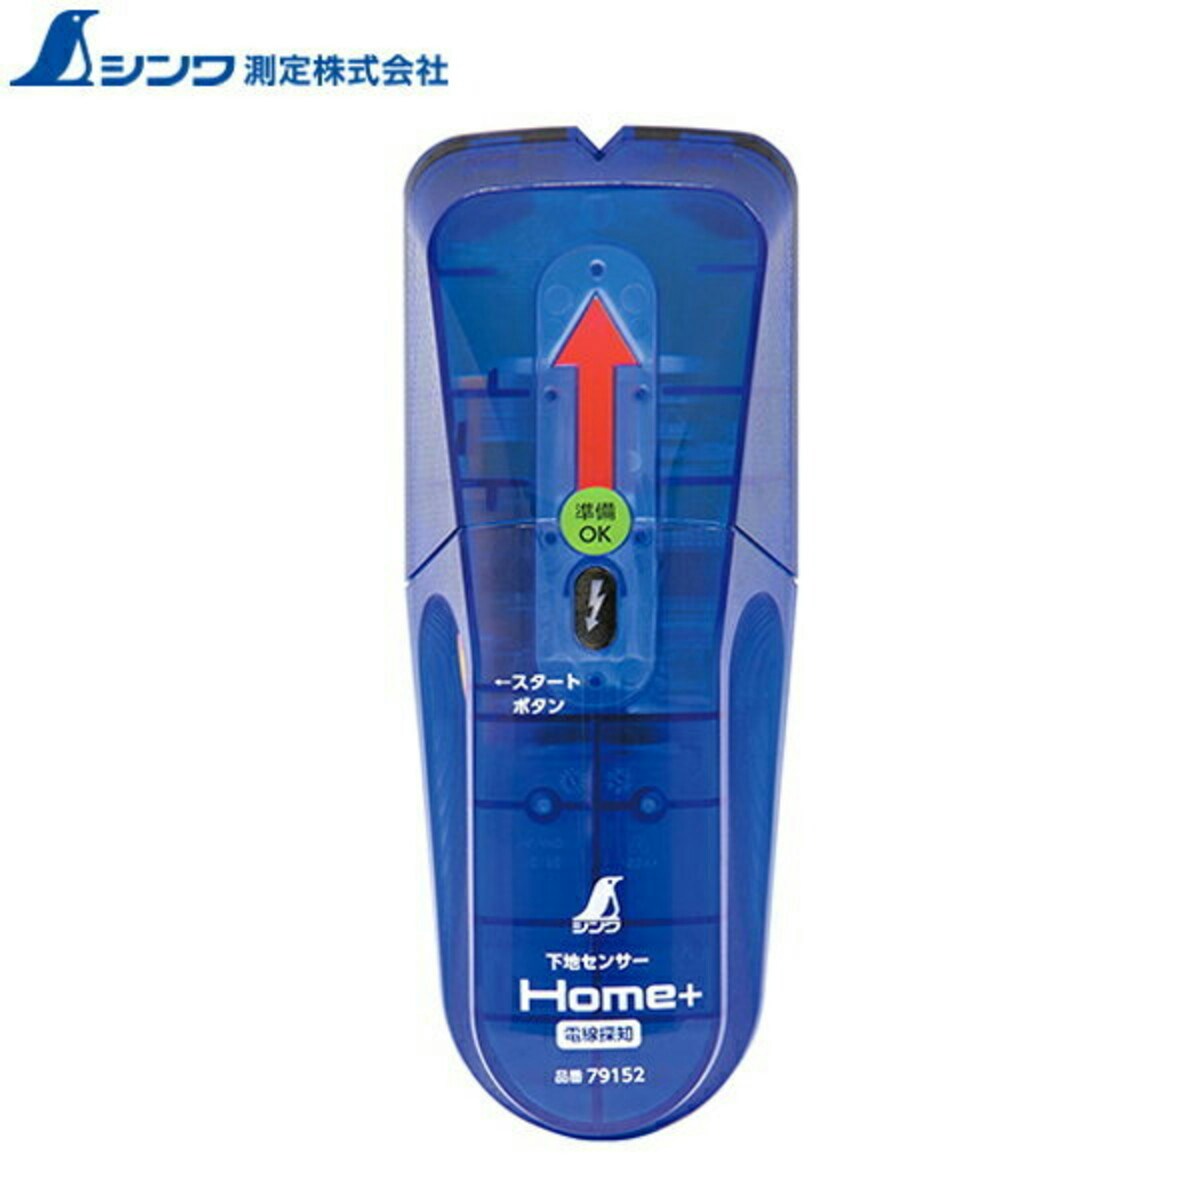 シンワ測定 下地センサー Home＋ 電線探知 79152 (電線警告機能付) 